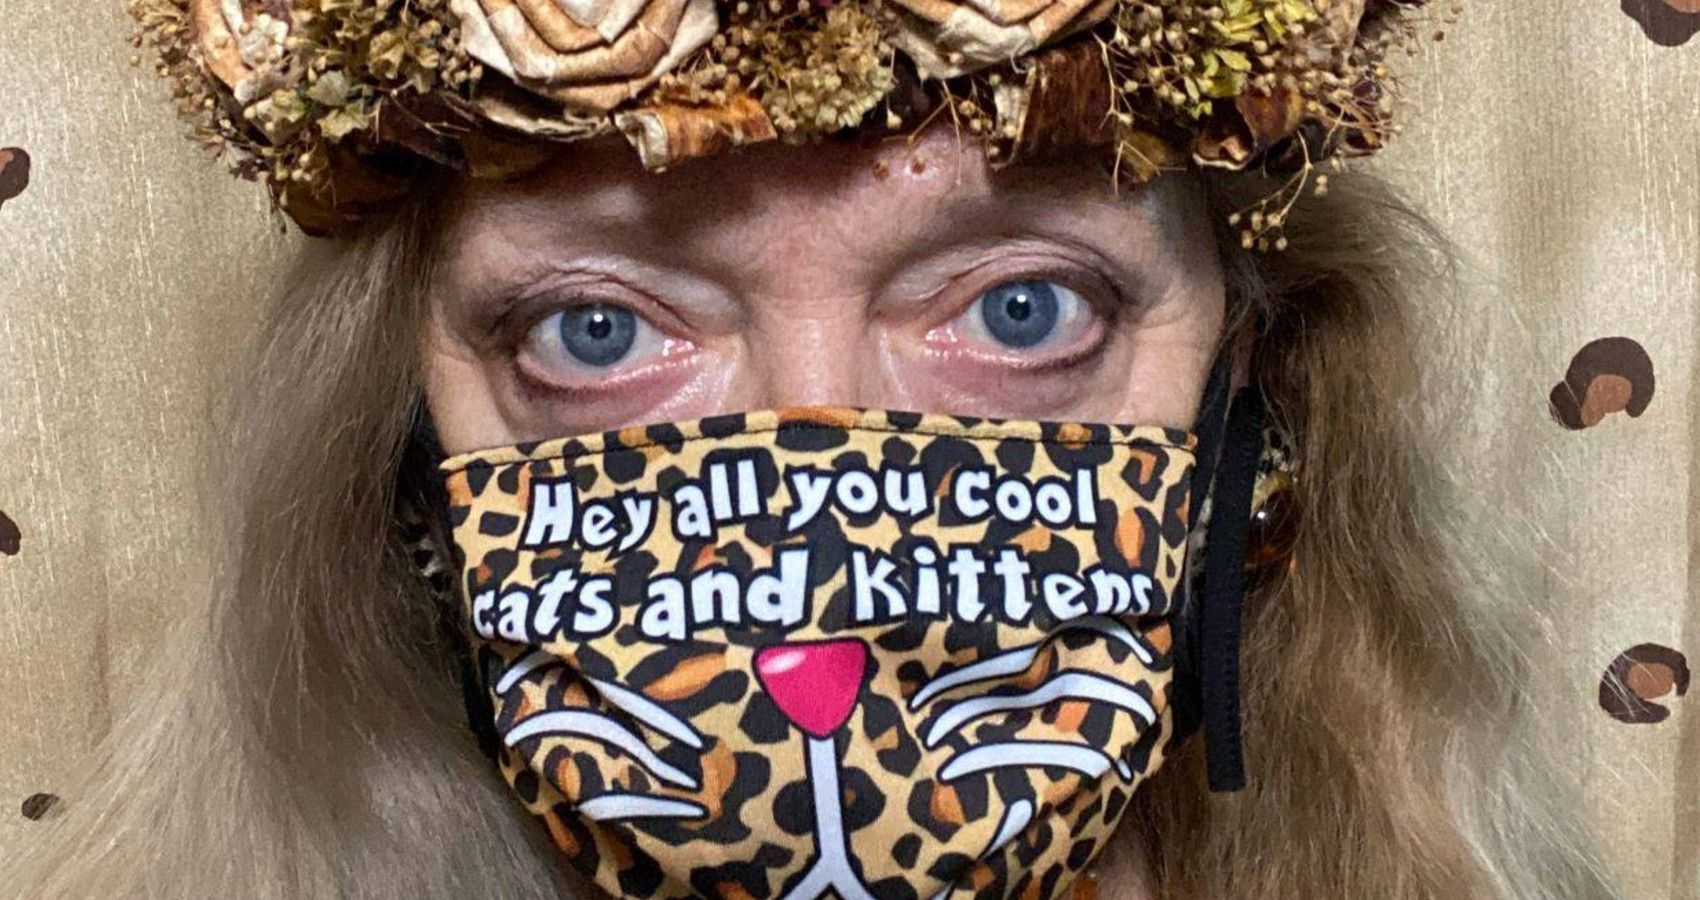 Carole Baskin Wearing A Face Mask